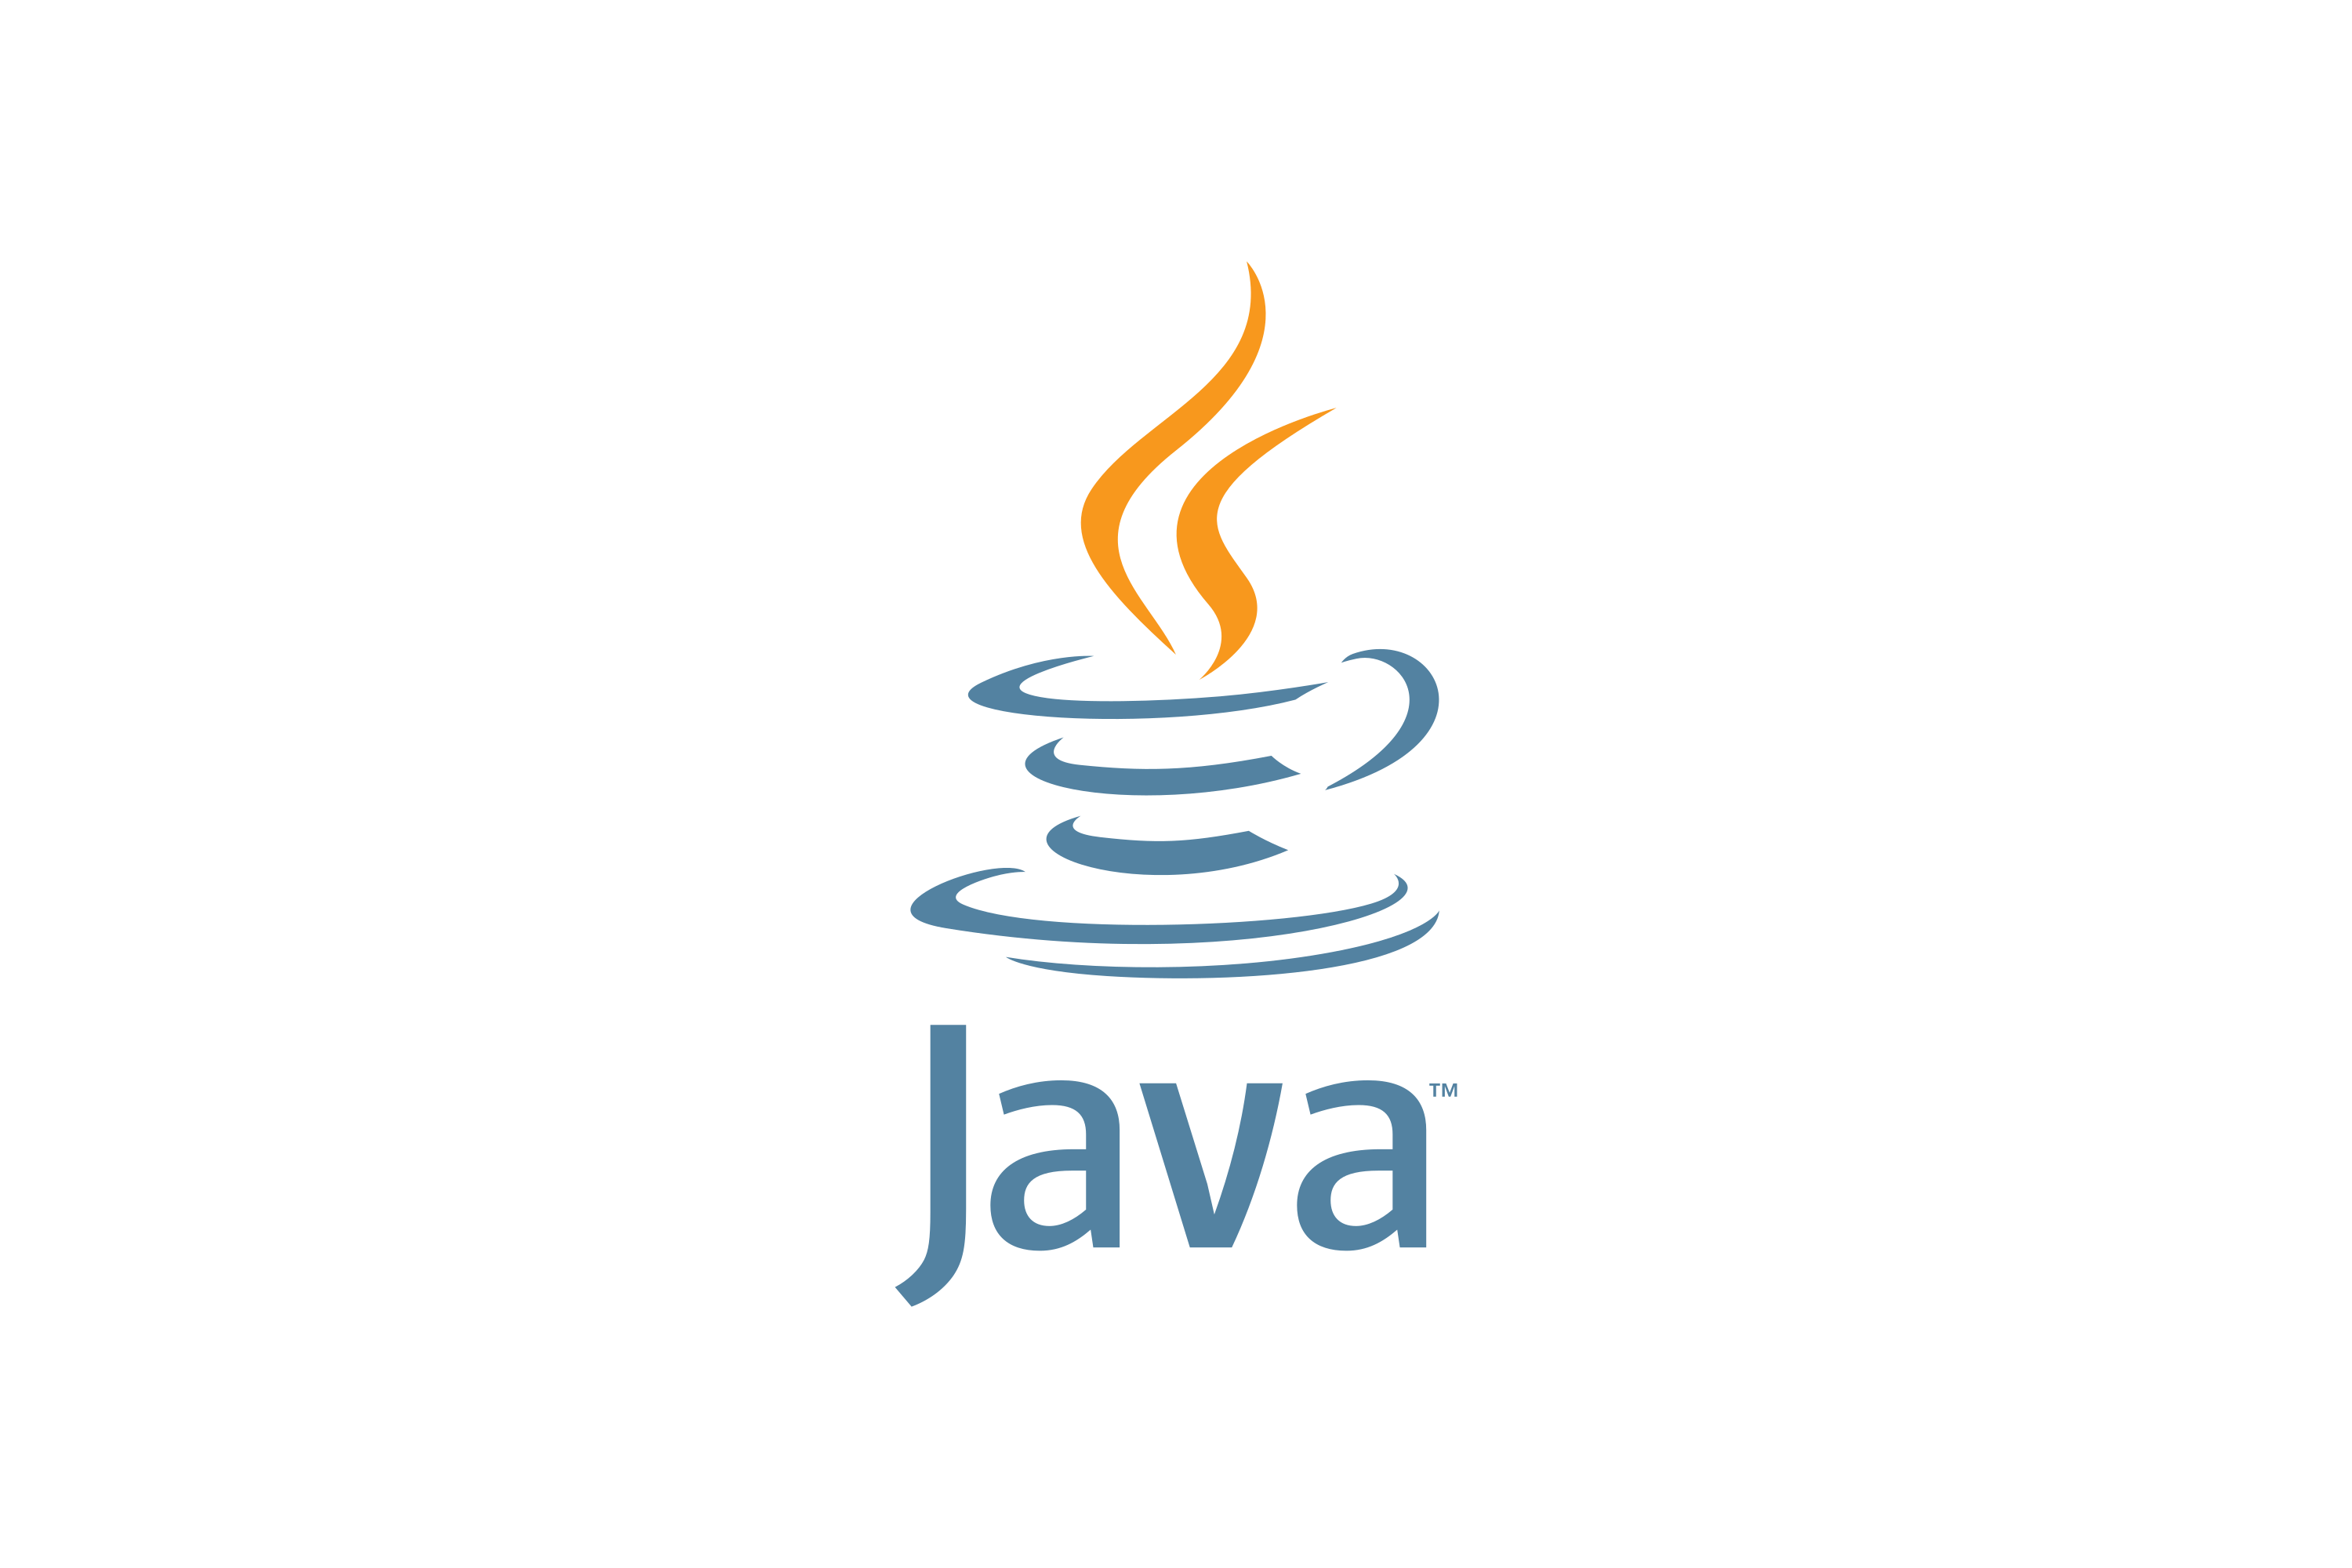 Jvaязык программирования логотип. Иконка java. Java логотип. Джава язык программирования логотип.